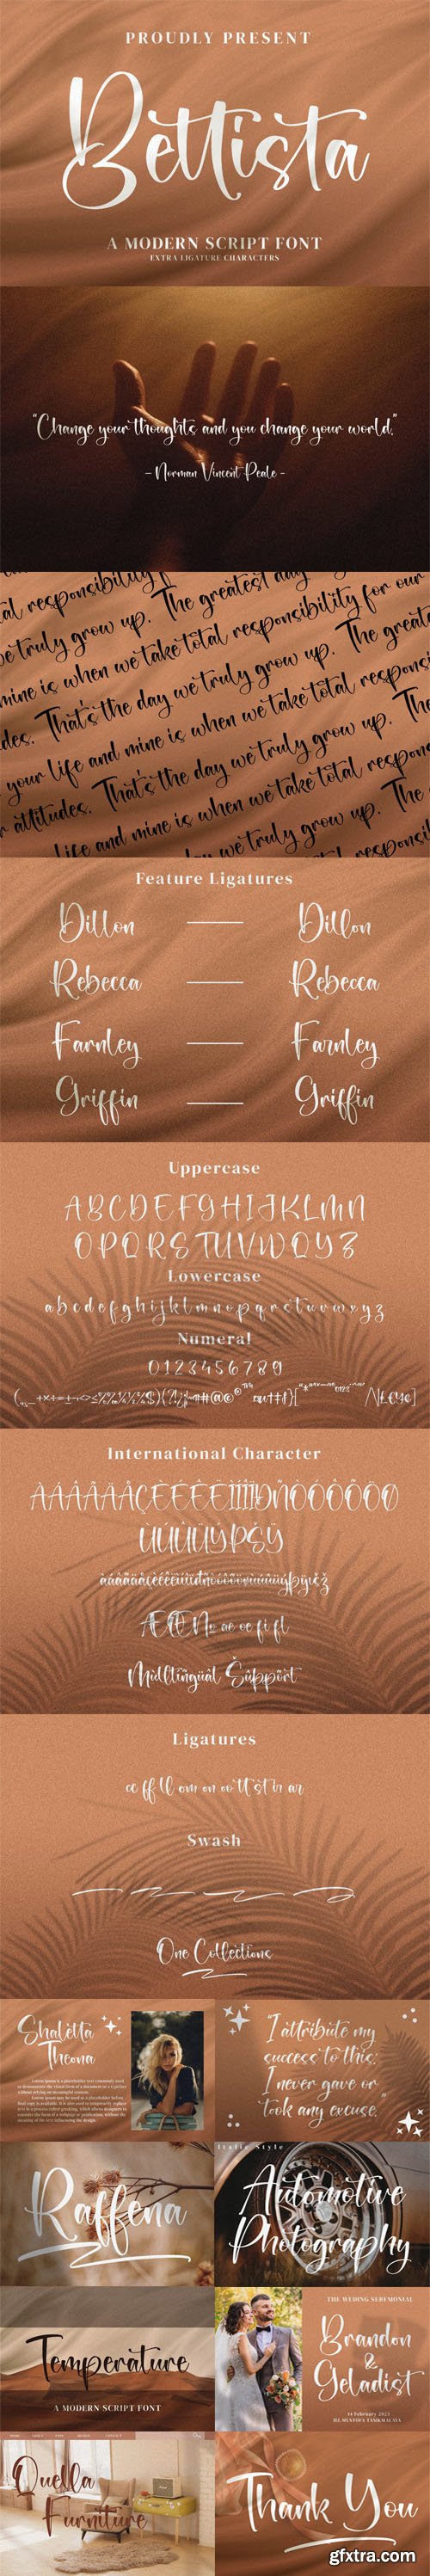 Bettista - Modern Calligraphy Font